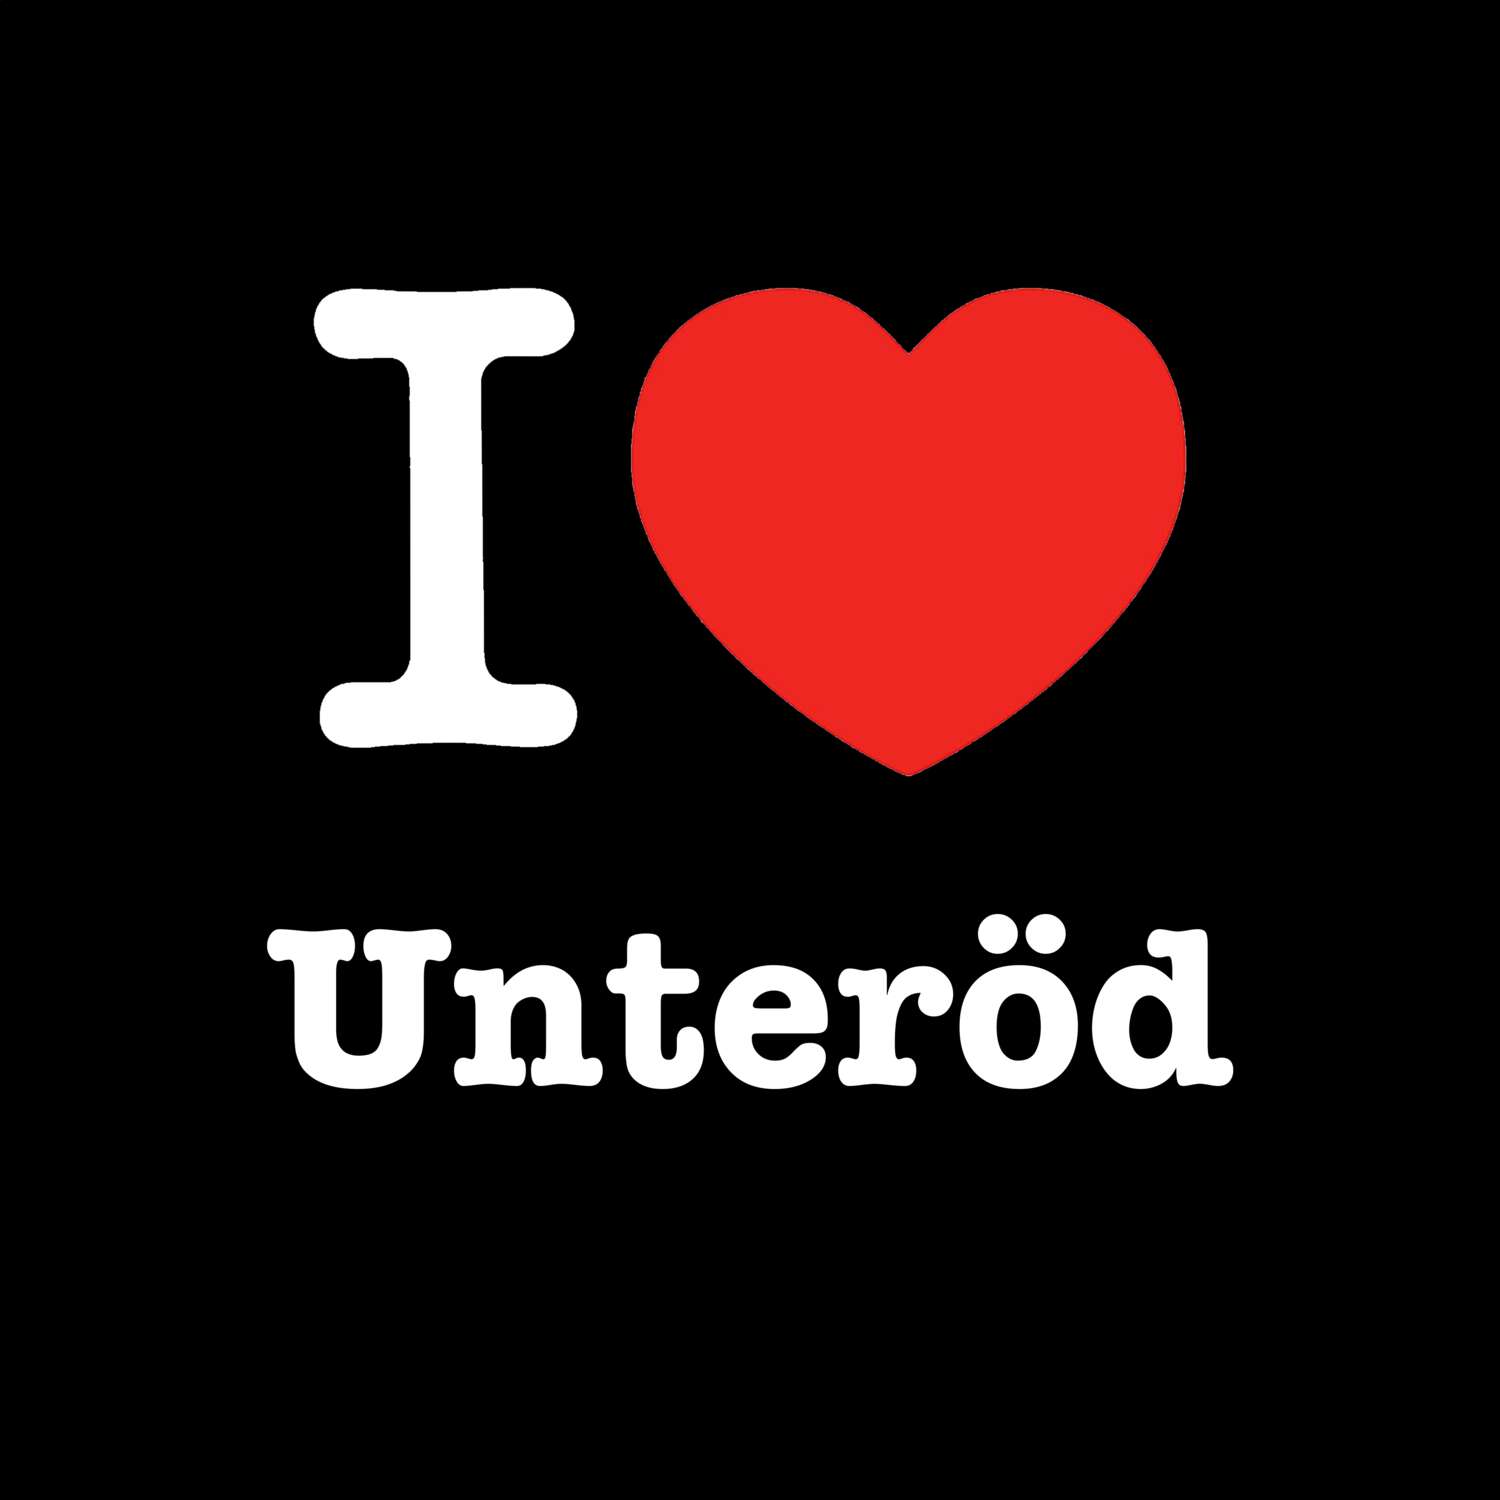 Unteröd T-Shirt »I love«